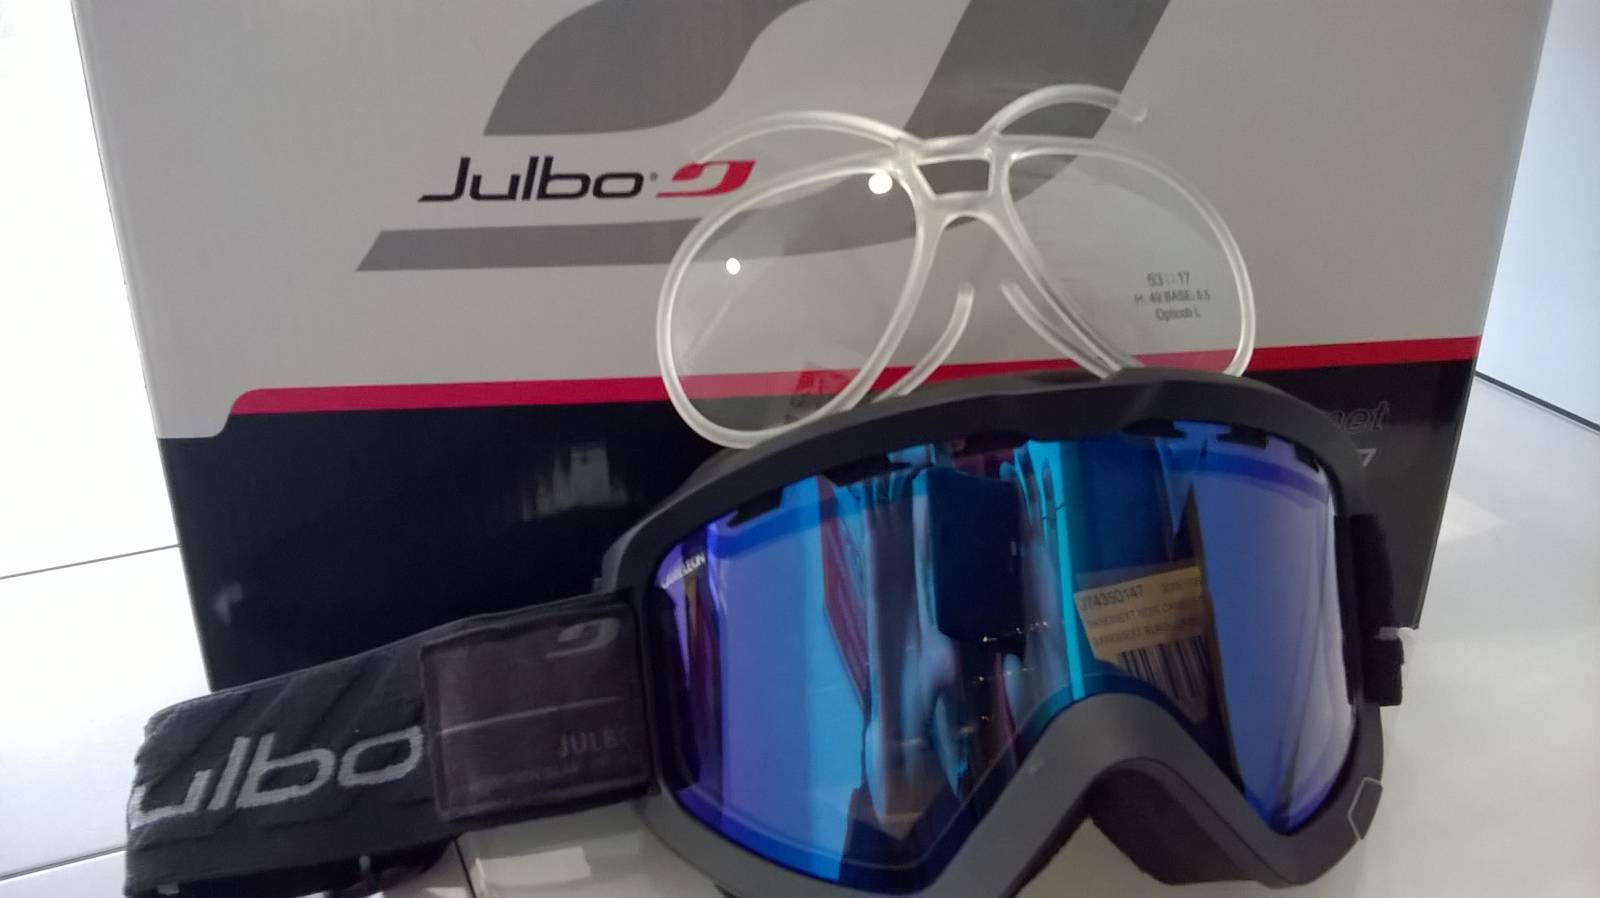 Masques et lunettes de ski à la vue Aix en Provence » Les Milles Optiques